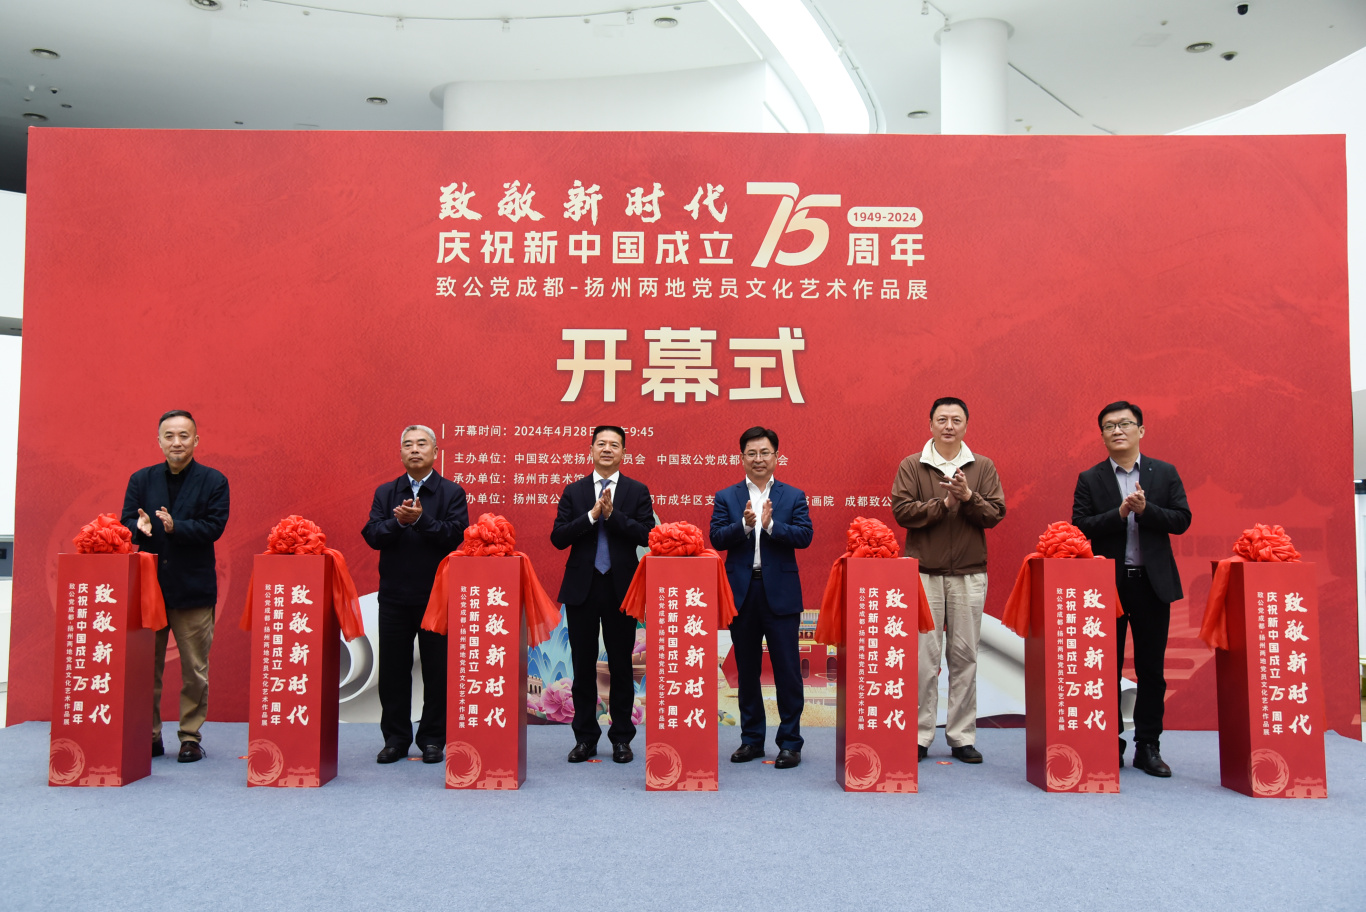 致公黨成都-揚州兩地黨員文化藝術作品展開幕